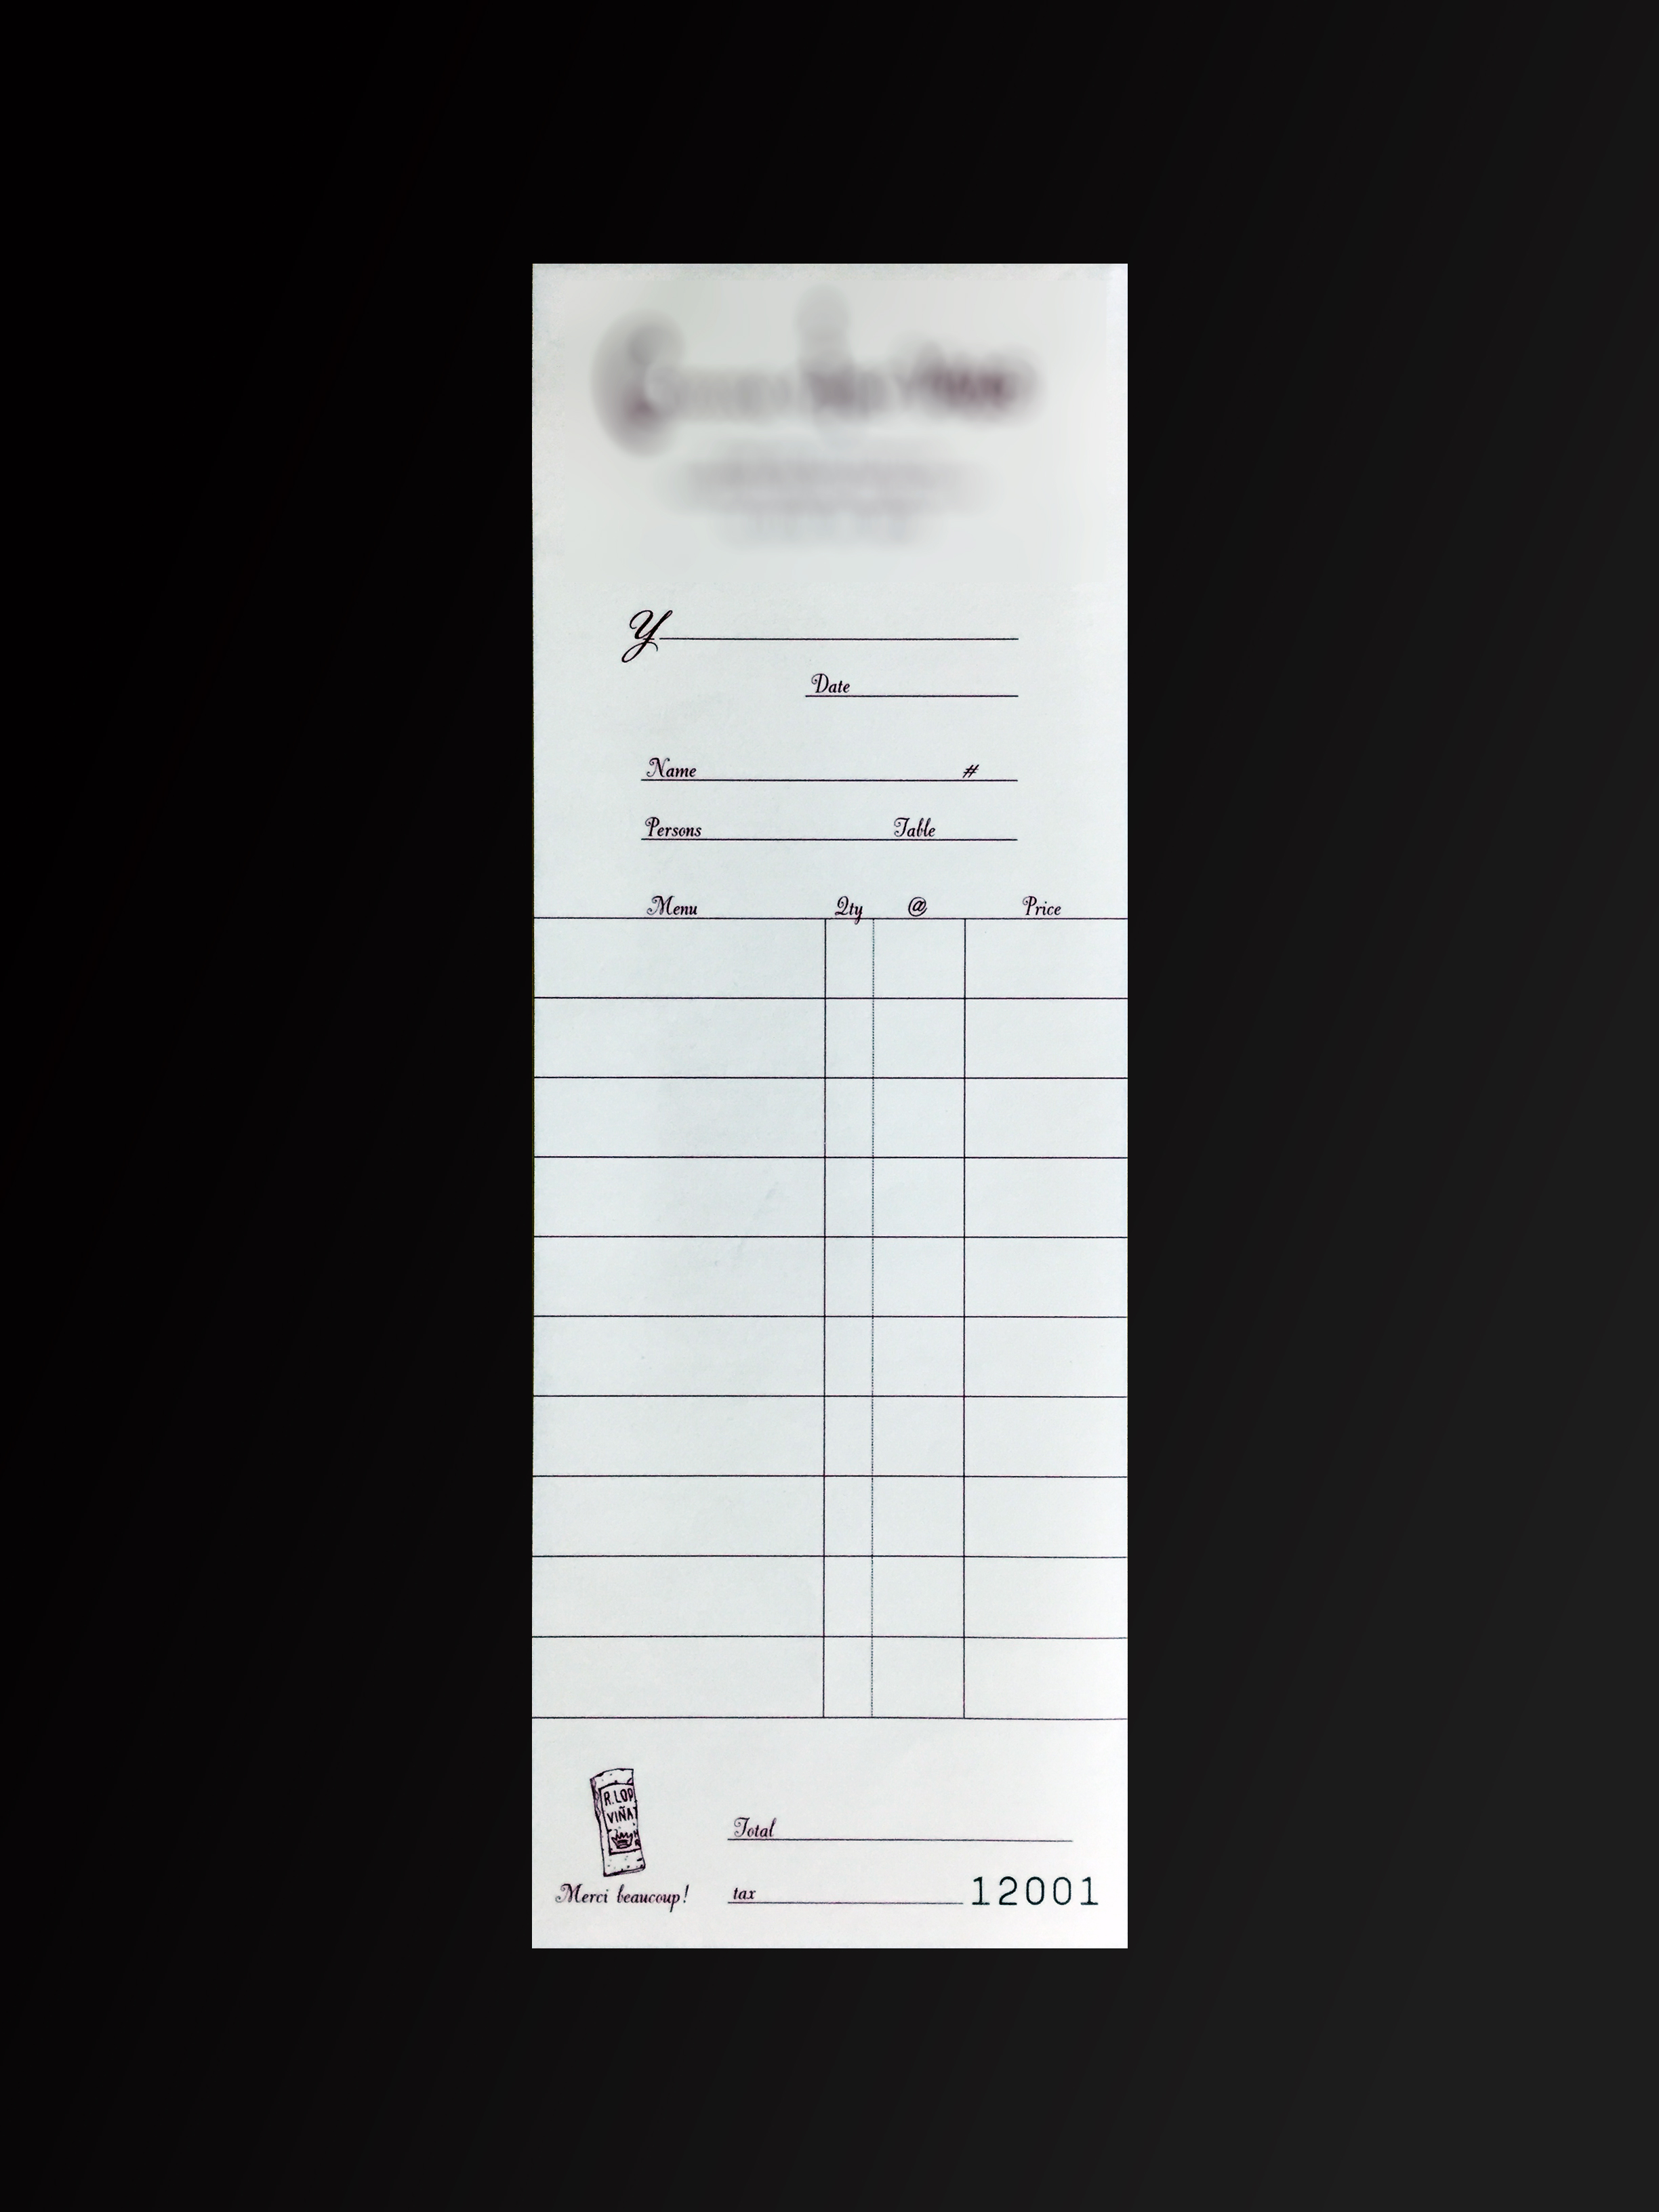 飲食業で使用する伝票(2枚複写)の伝票作成実績